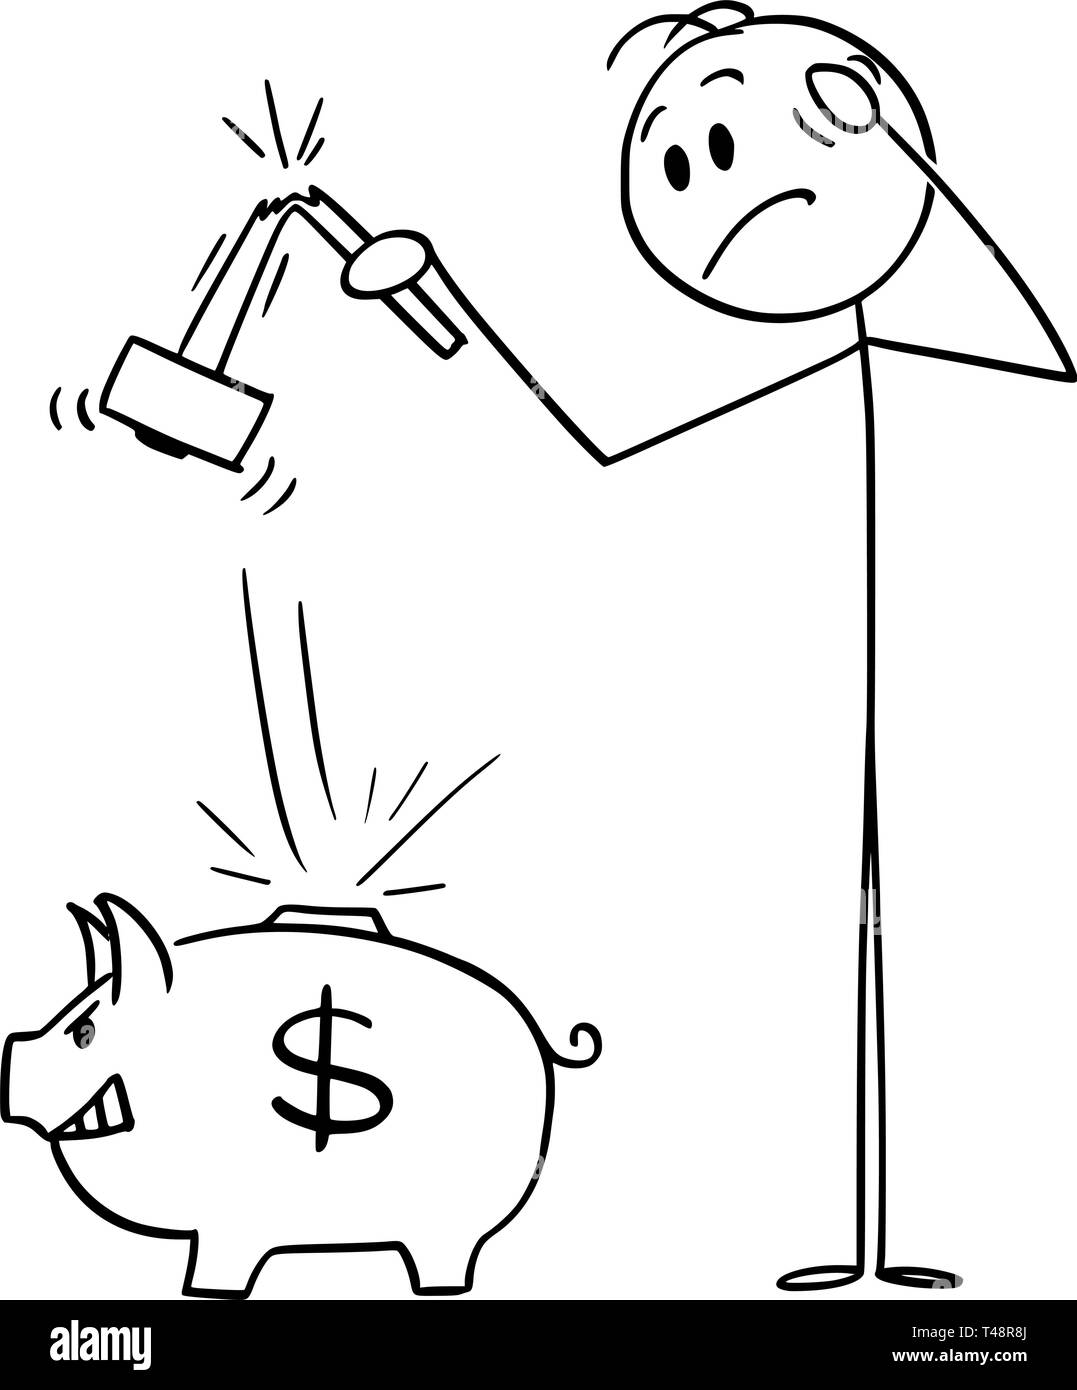 Cartoon Strichmännchen Zeichnen konzeptionelle Darstellung der Mann mit gebrochenen Hammer, der versuchte, Sparschwein zu brechen und sein Geld oder Einsparungen erhalten. Das Konzept der Banken. Stock Vektor